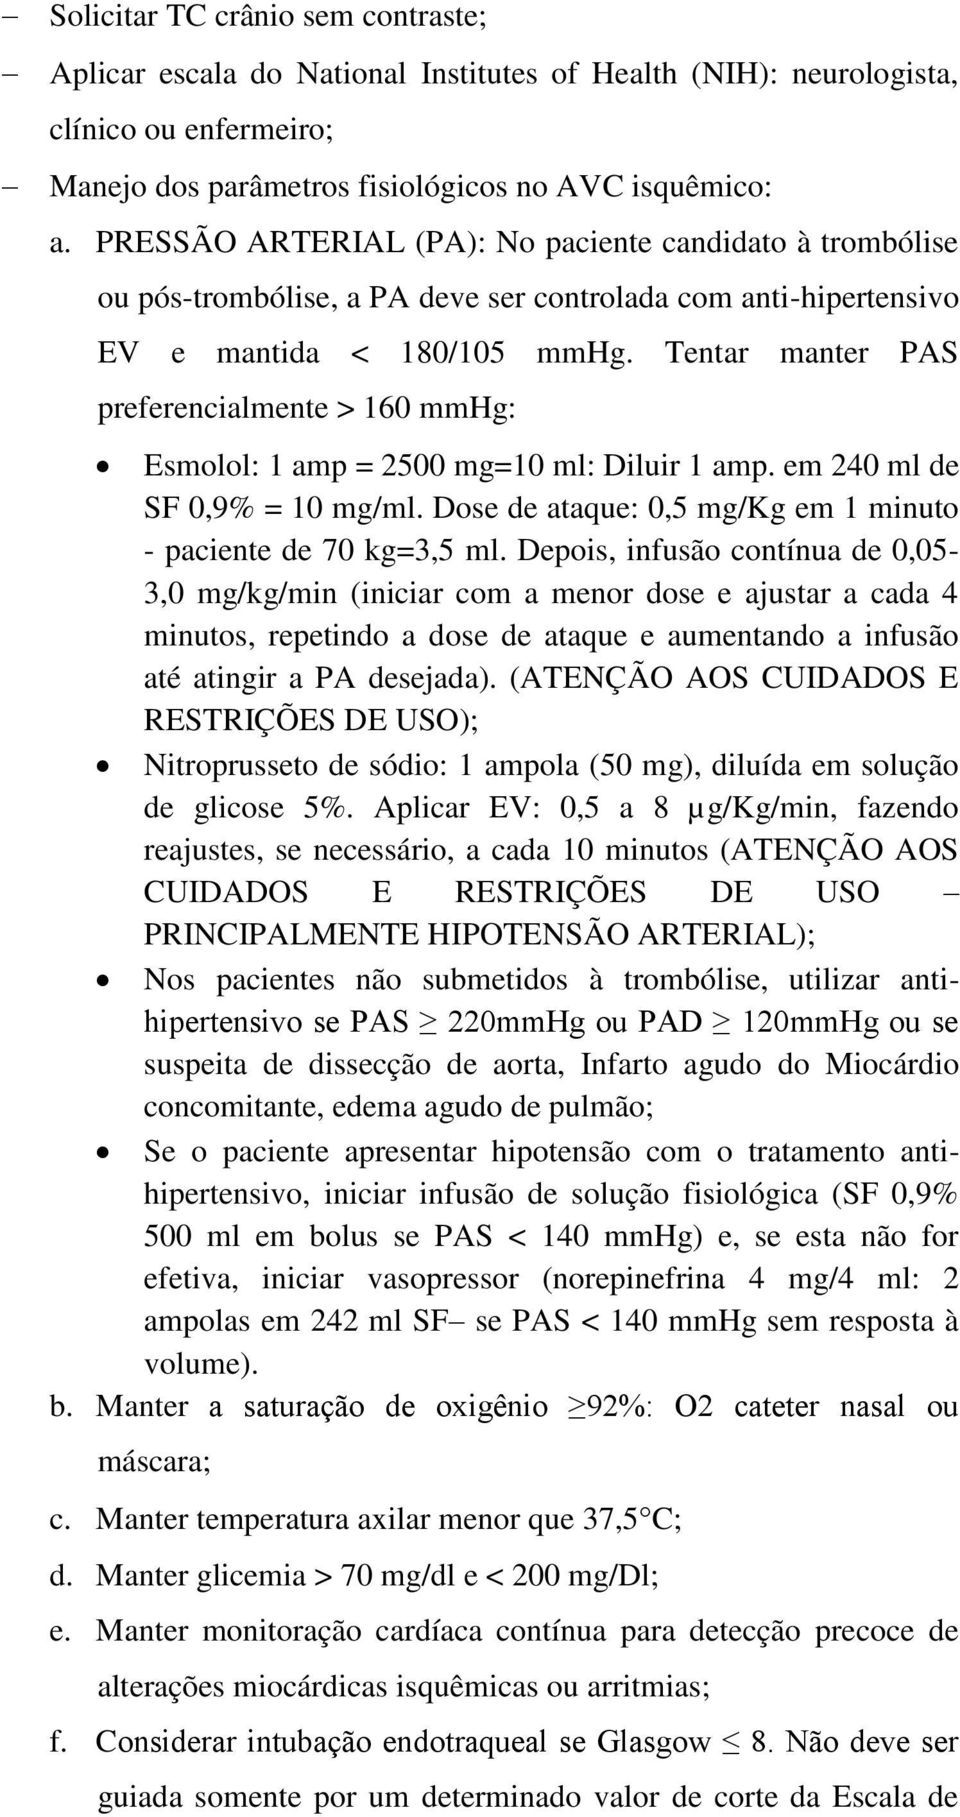 Tentar manter PAS preferencialmente > 160 mmhg: Esmolol: 1 amp = 2500 mg=10 ml: Diluir 1 amp. em 240 ml de SF 0,9% = 10 mg/ml. Dose de ataque: 0,5 mg/kg em 1 minuto - paciente de 70 kg=3,5 ml.